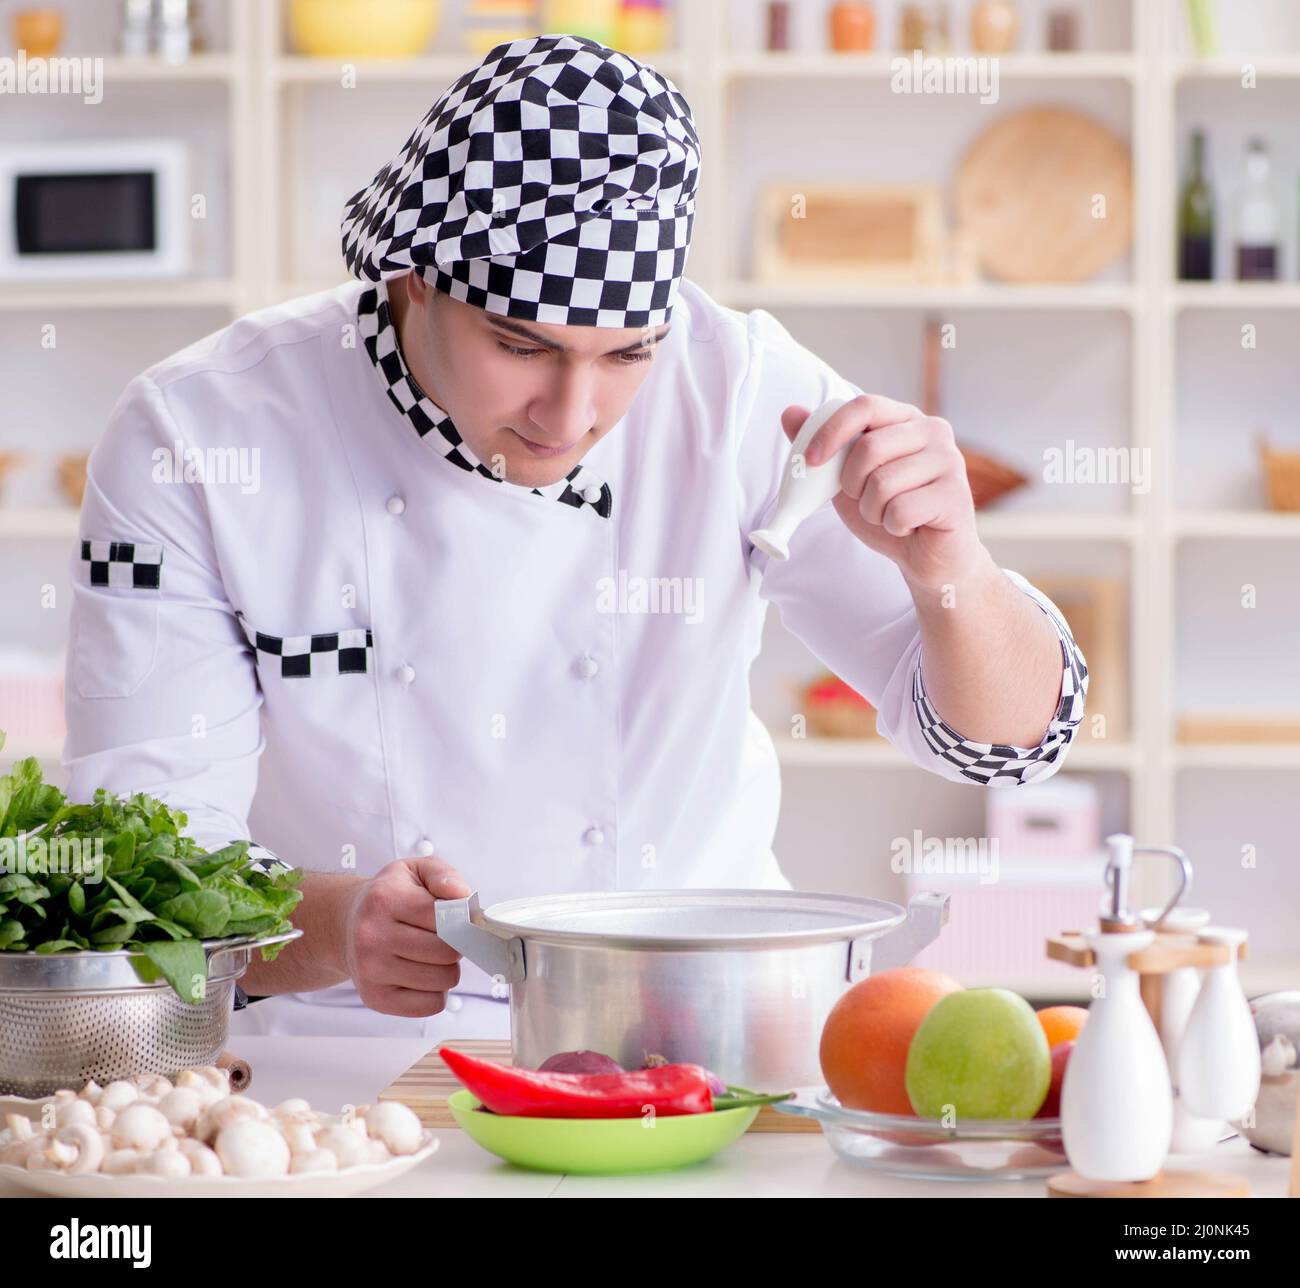 Macho joven cocinero trabajando en la cocina Foto de stock